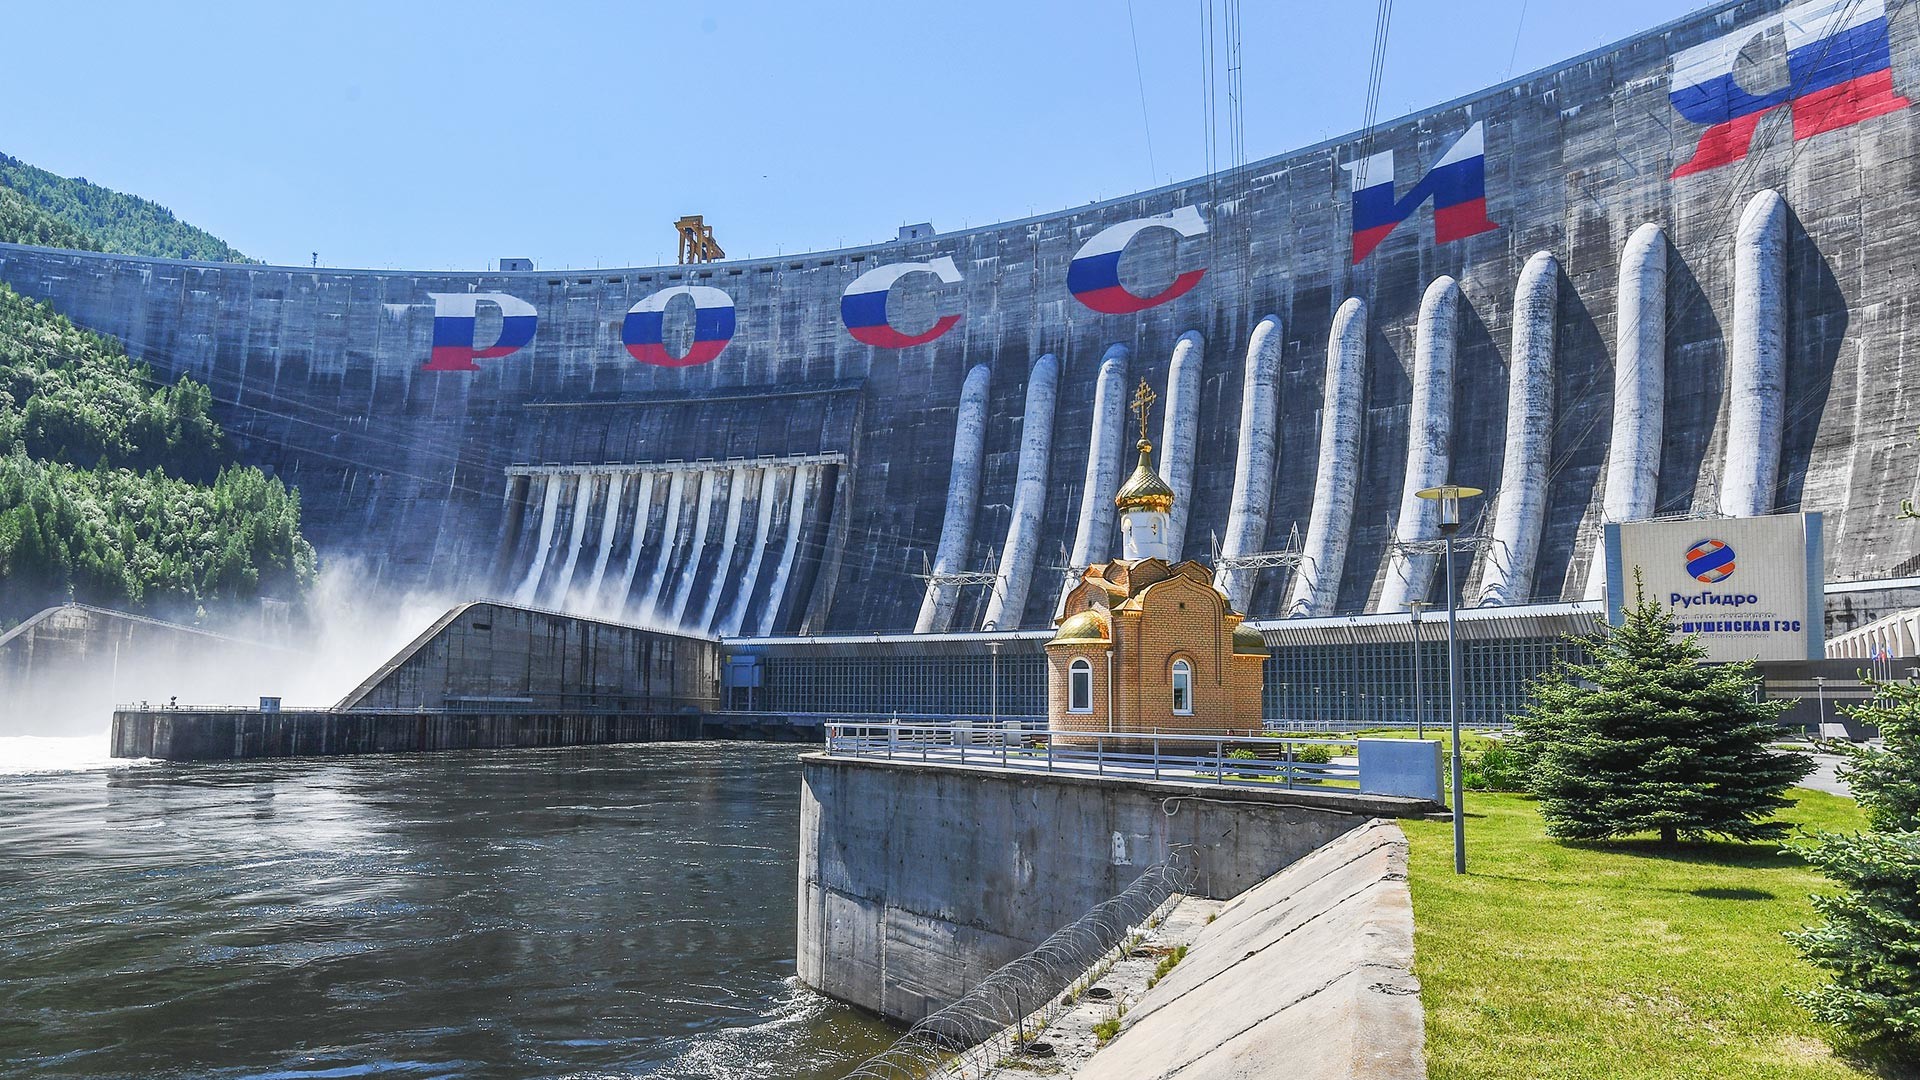 La central hidroeléctrica de Sayano-Shushénskaia

